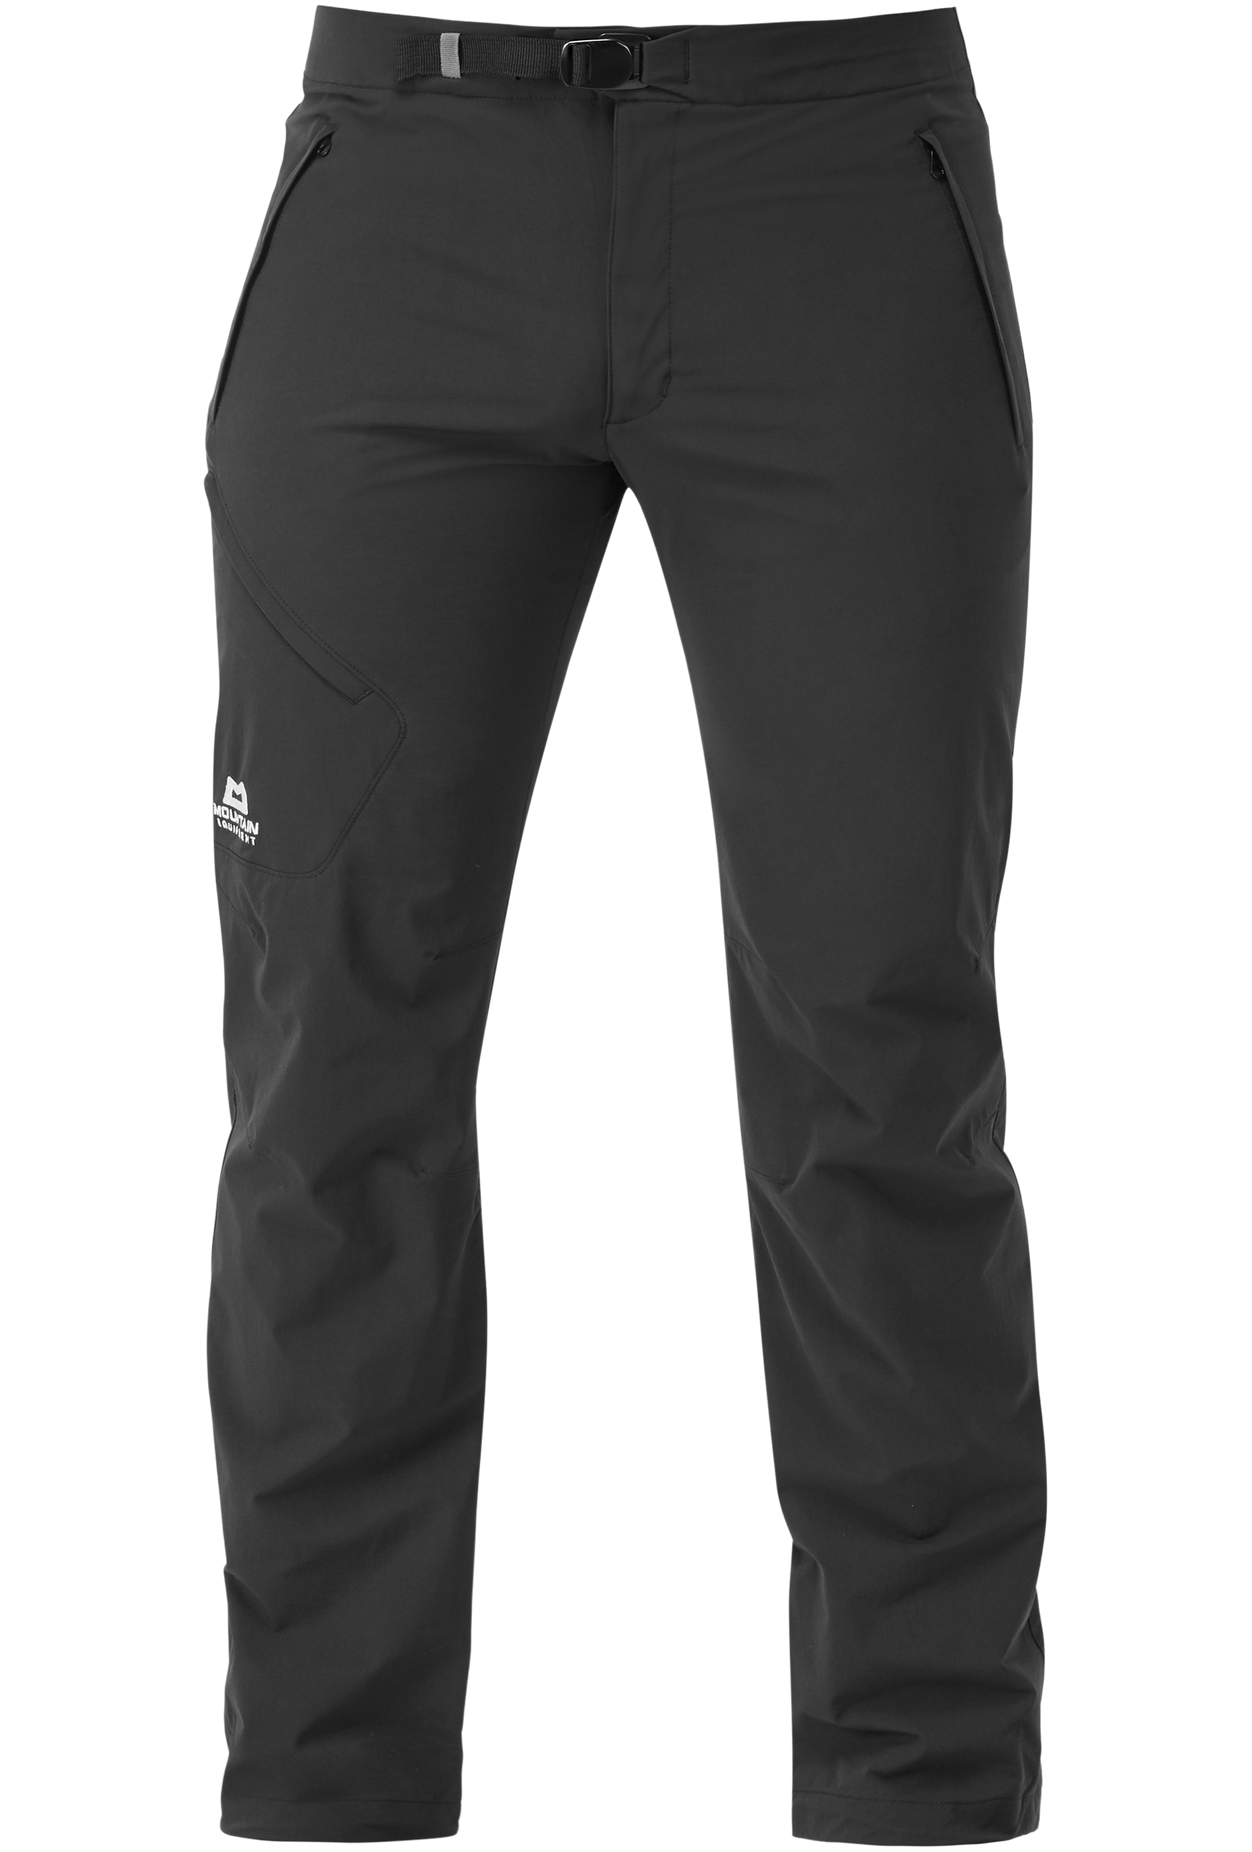 Mountain Equipment pánské softshellové kalhoty Comici Pant - prodloužené Barva: black/black, Velikost: 32/M